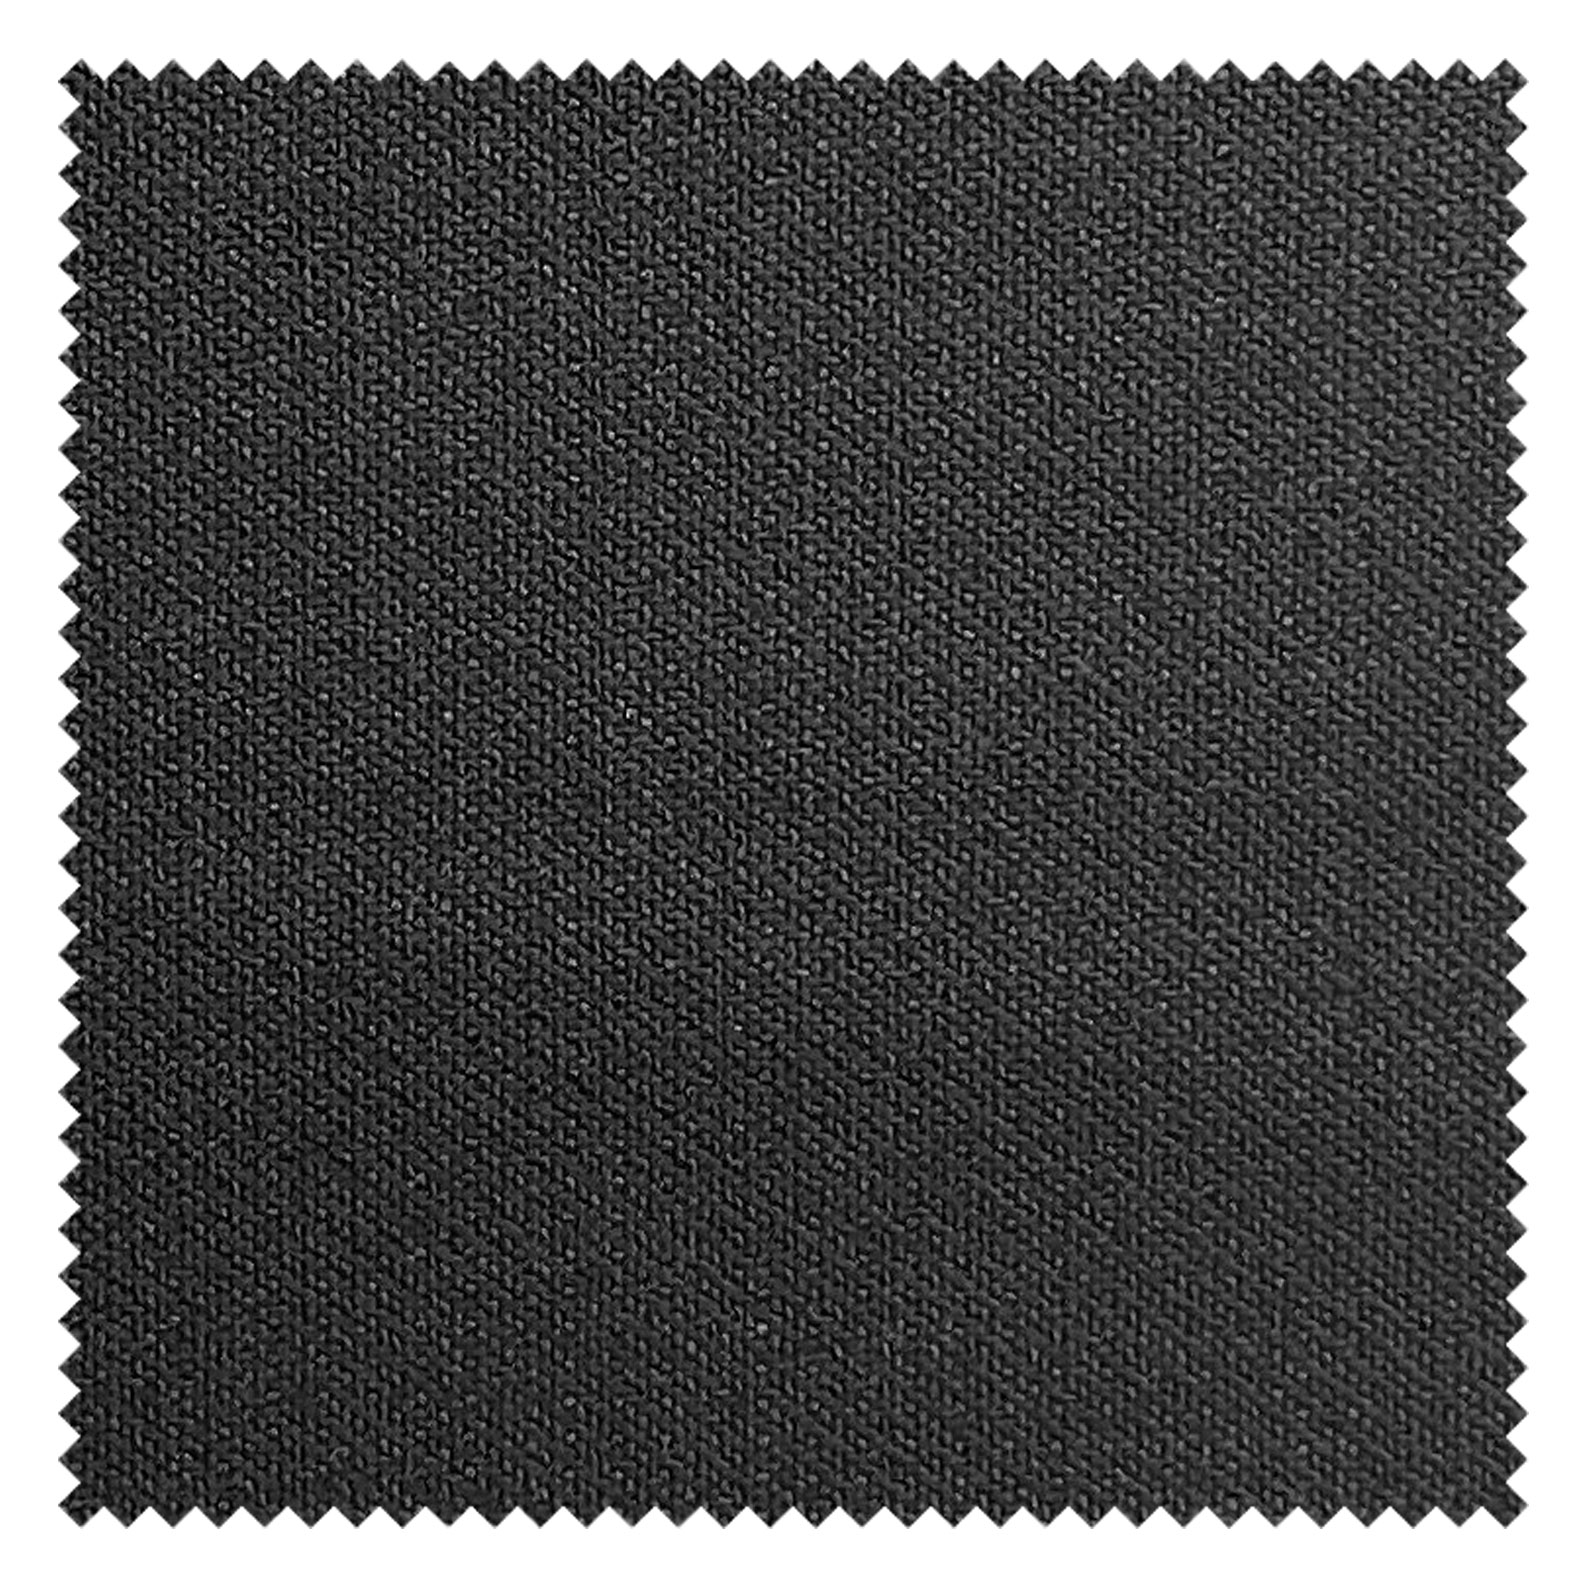 KINGMAN Silk Wool Fabric HAMPSTEAD ZANOTTI JET-BLACK ผ้าตัดชุดสูท สีดำ กางเกง ผู้ชาย สีกากี ผ้าตัดเสื้อ ยูนิฟอร์ม ผ้าวูล ผ้าคุณภาพดี กว้าง 60 นิ้ว ยาว 1 เมตร